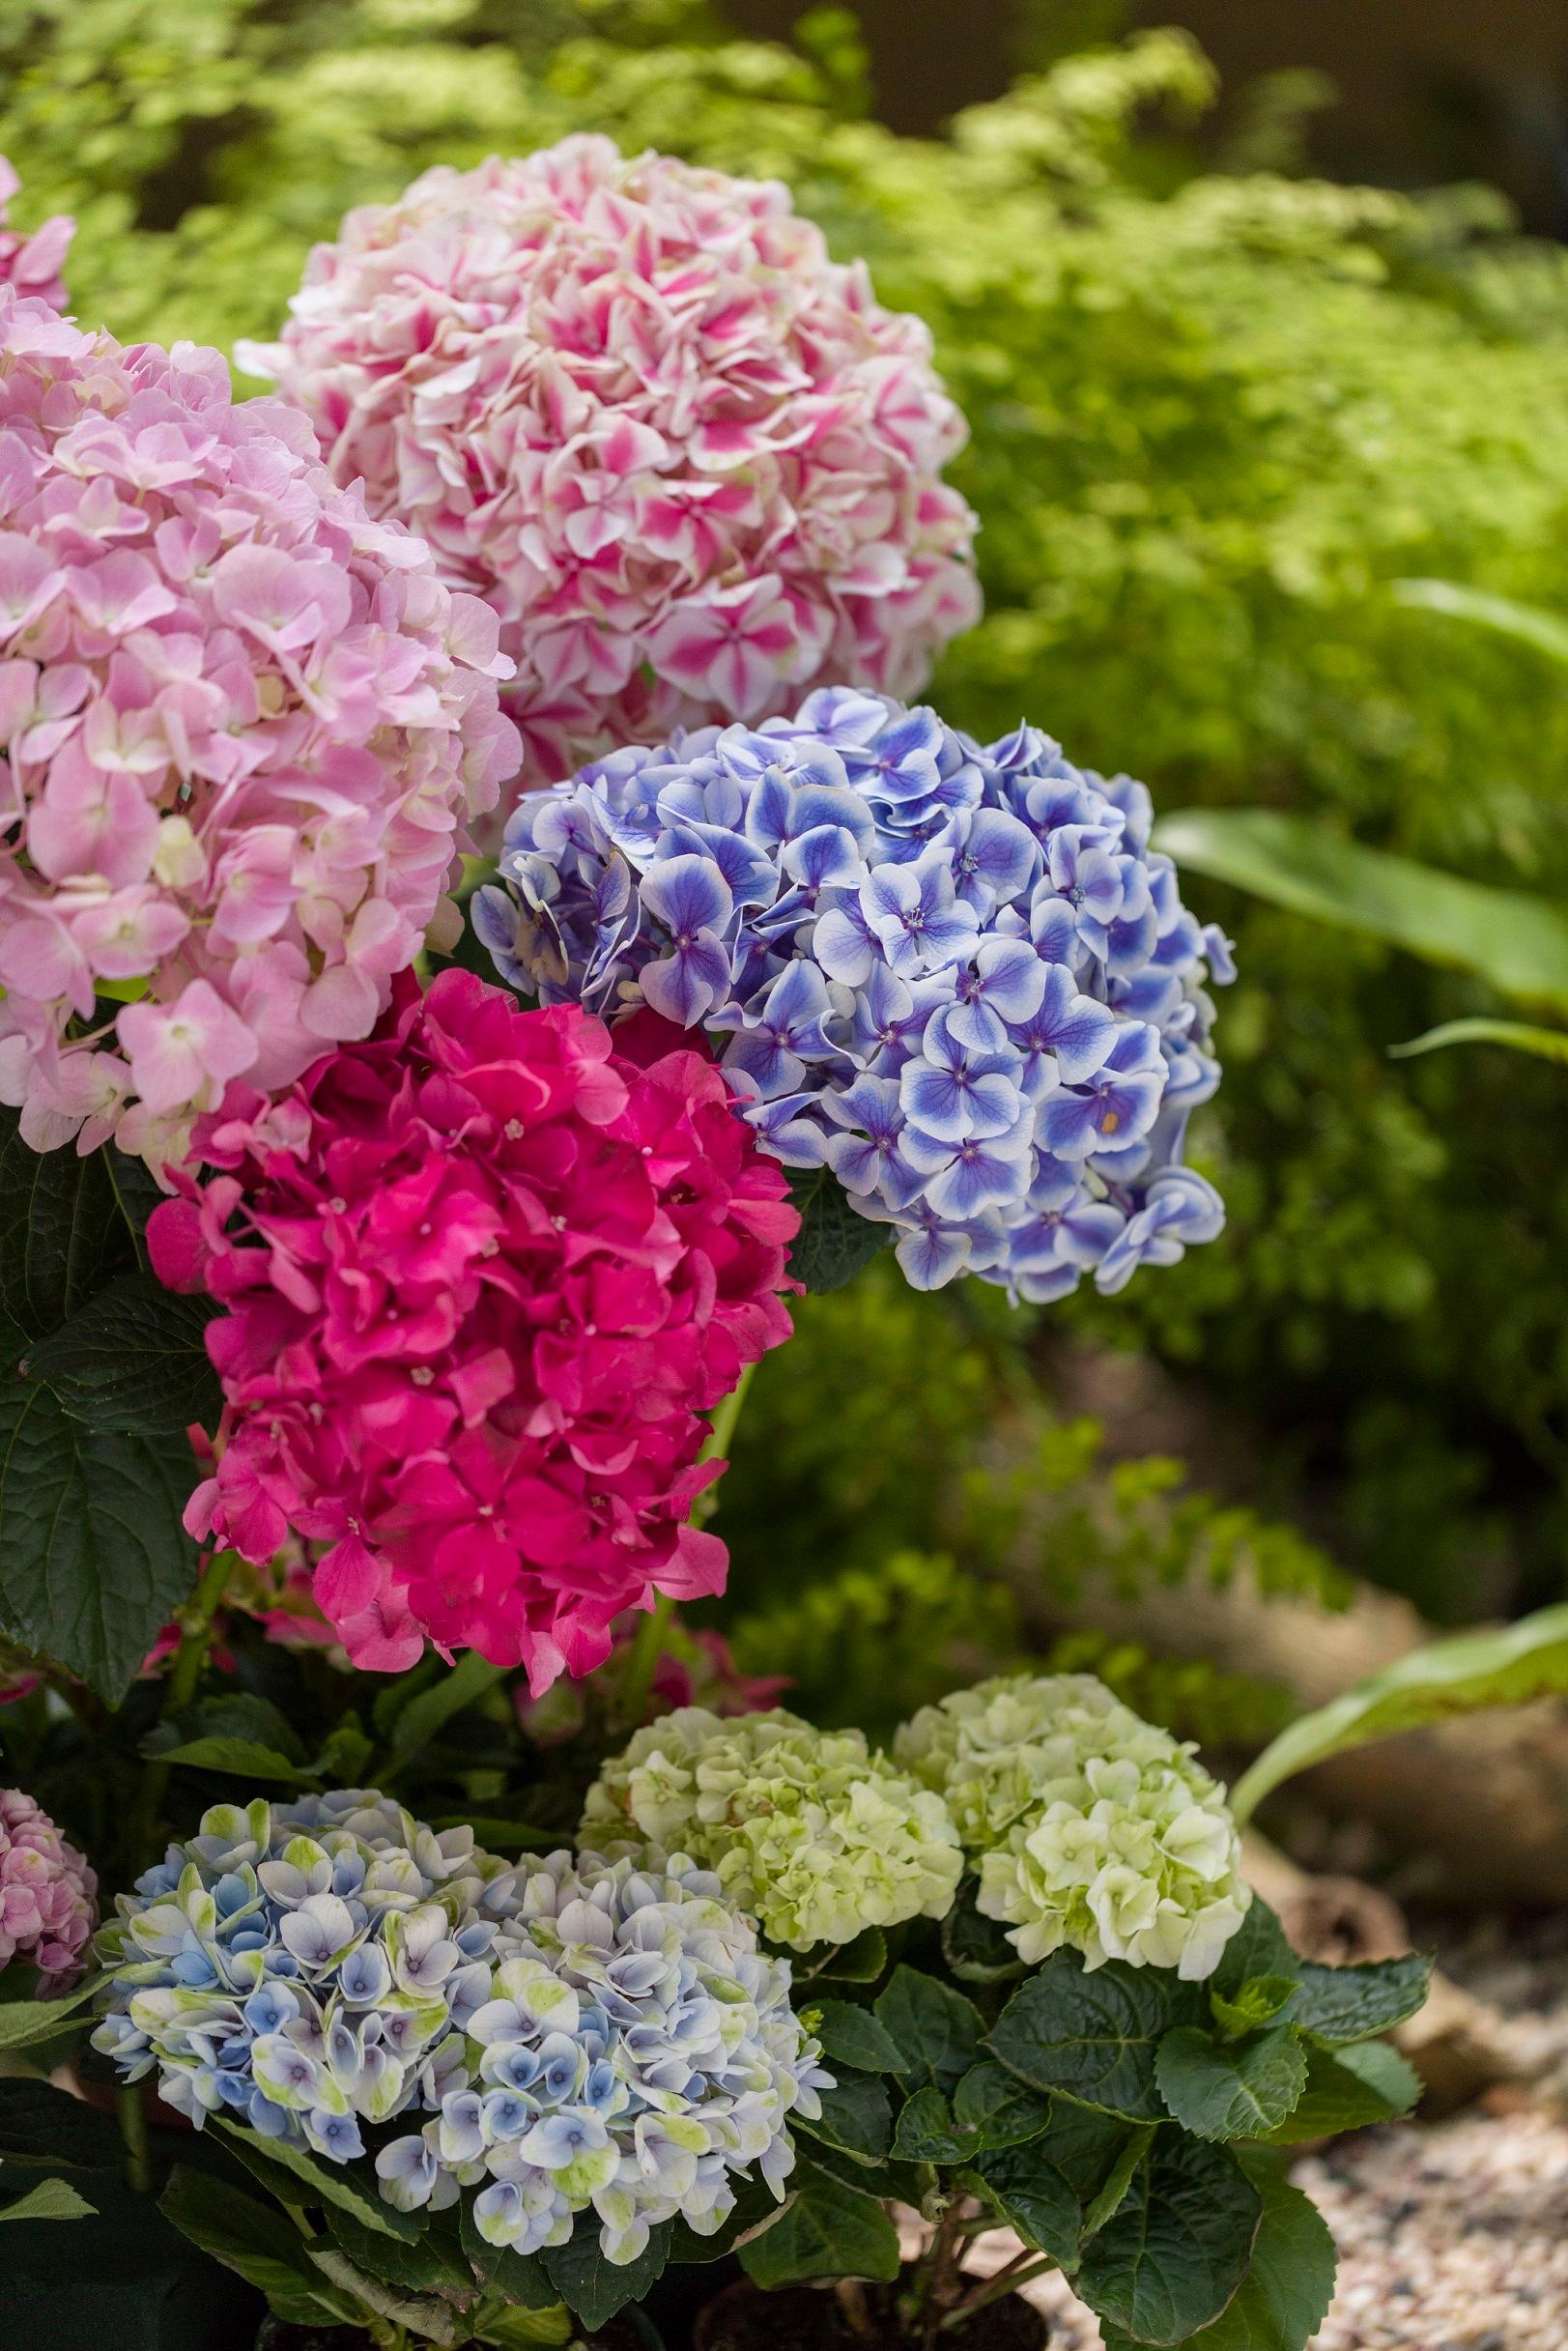 香港花卉展览三月十日至十九日在维多利亚公园举行，以花形娇美独特的绣球花为主题花。常见的绣球花有紫色、蓝色、粉红色、紫红色、白色及青色。